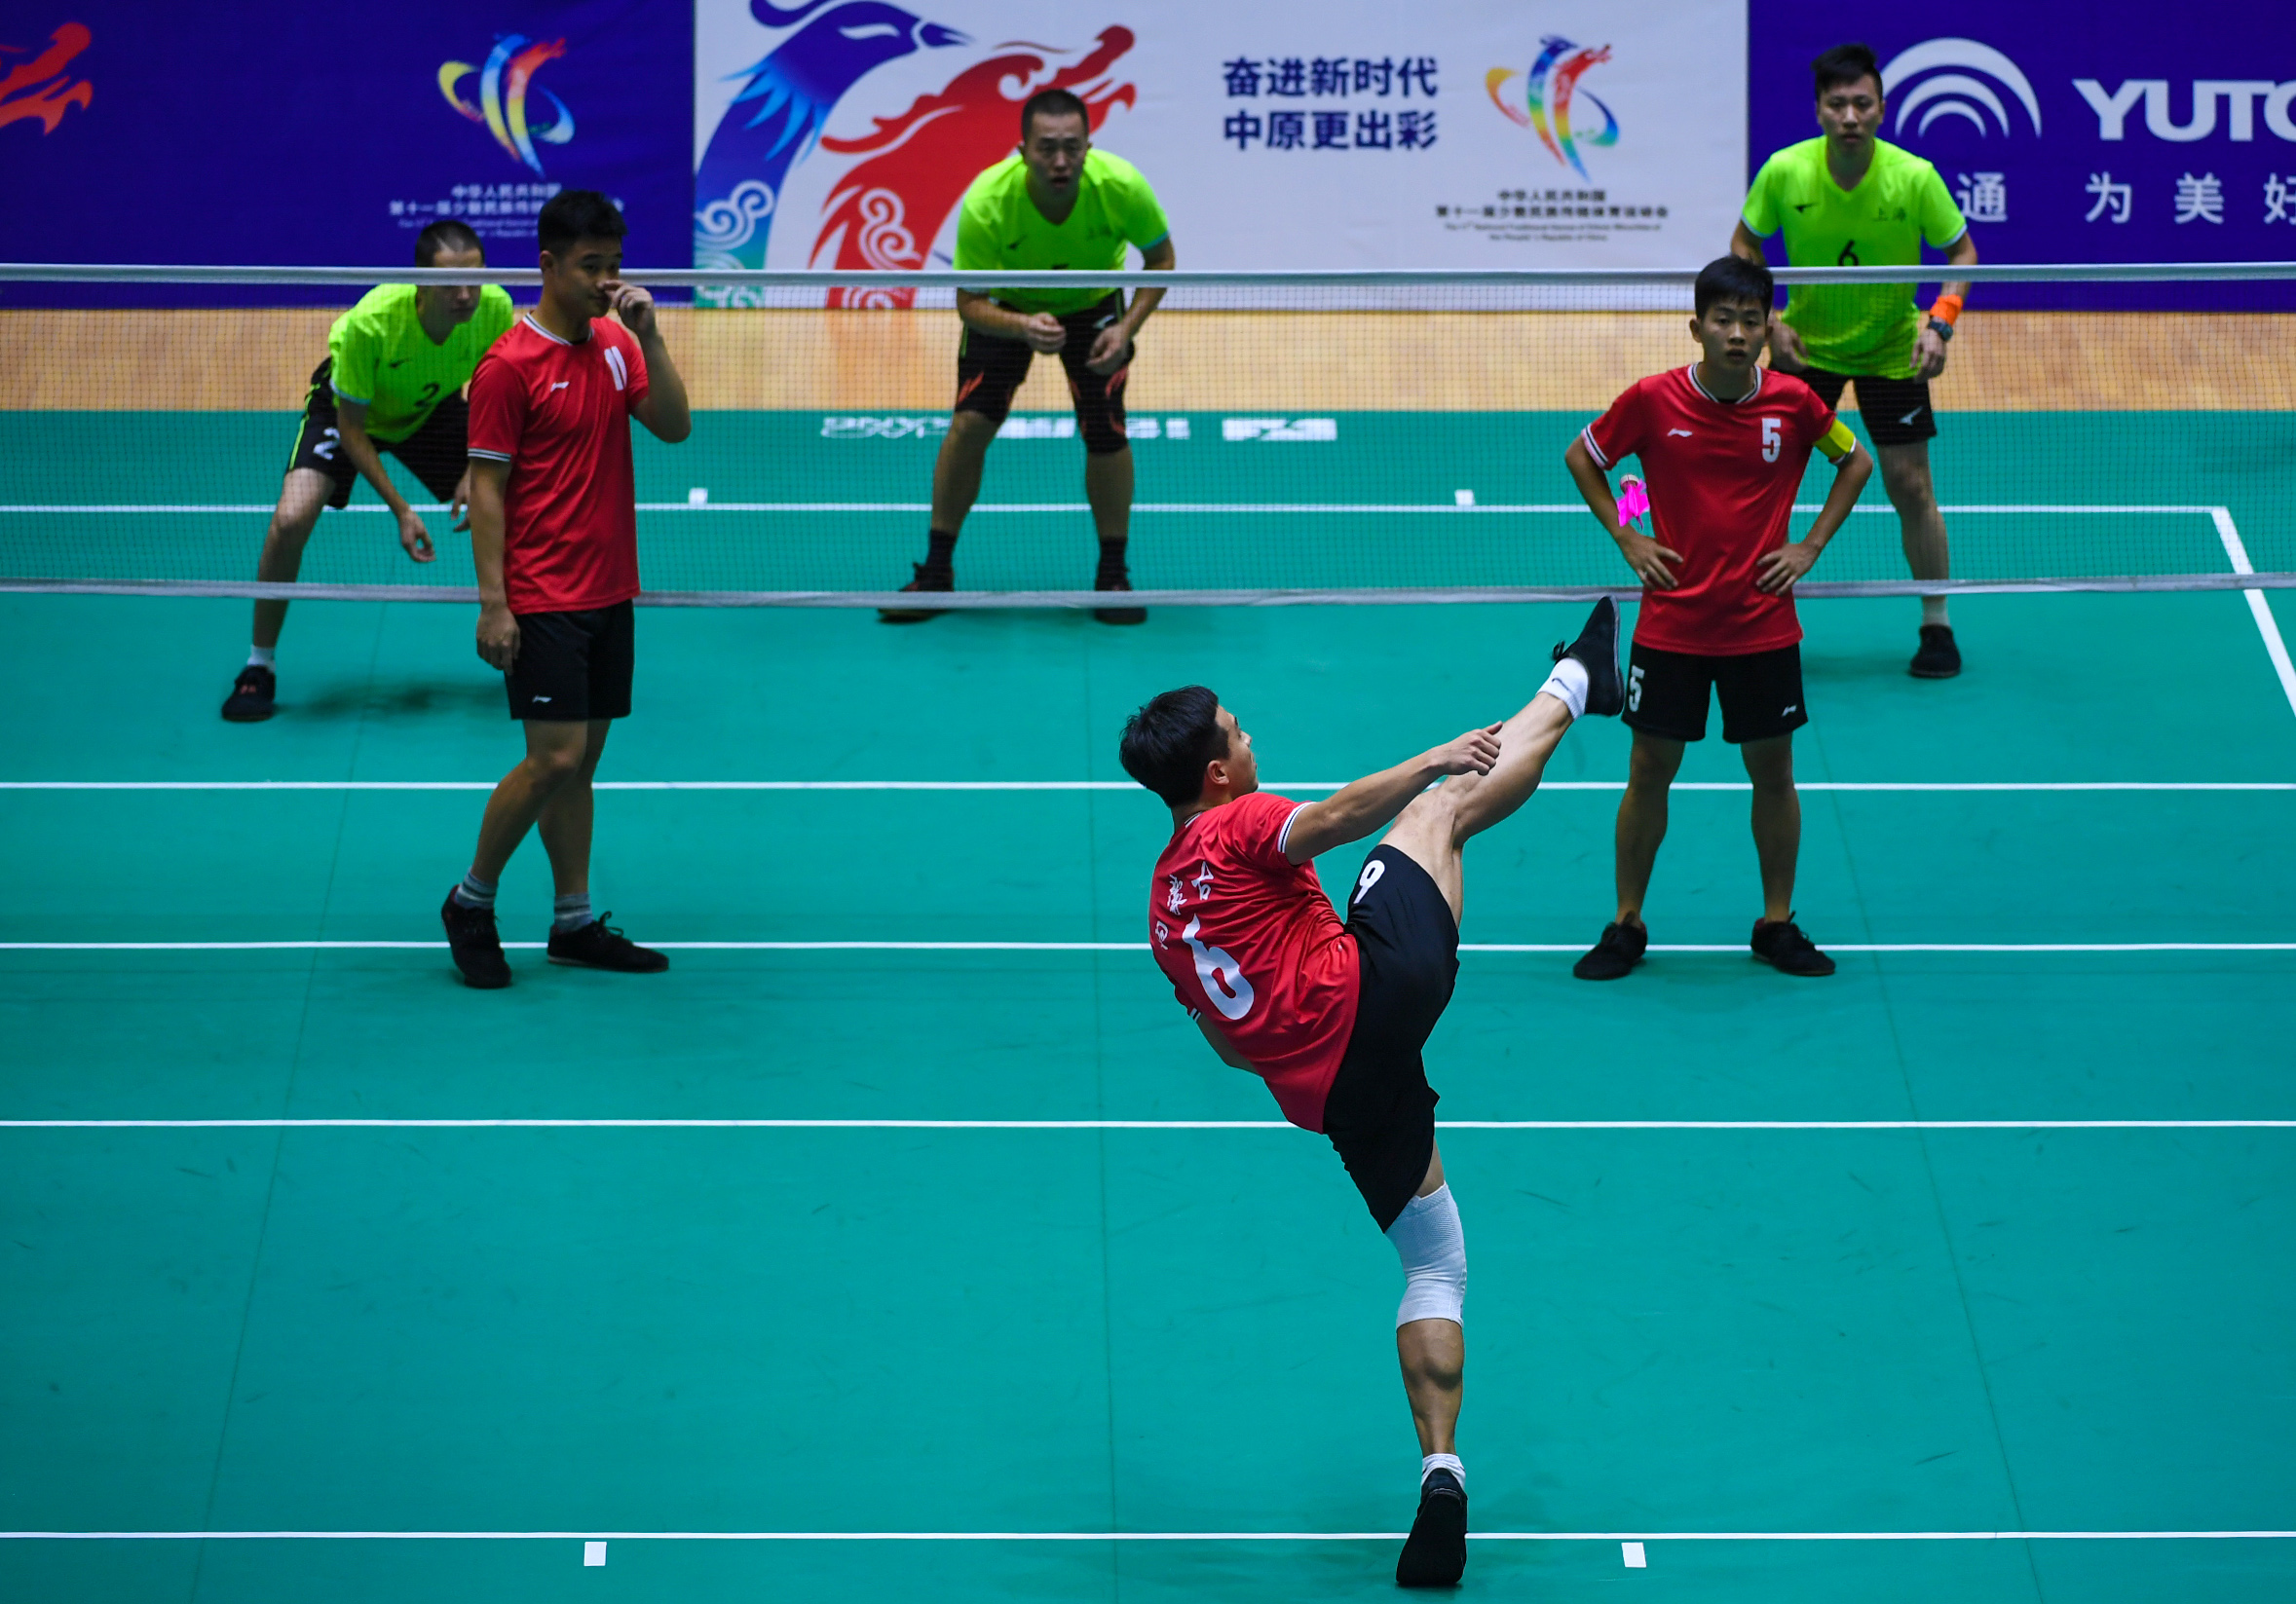 当日,在郑州举行的第十一届全国少数民族传统体育运动会毽球男子三人